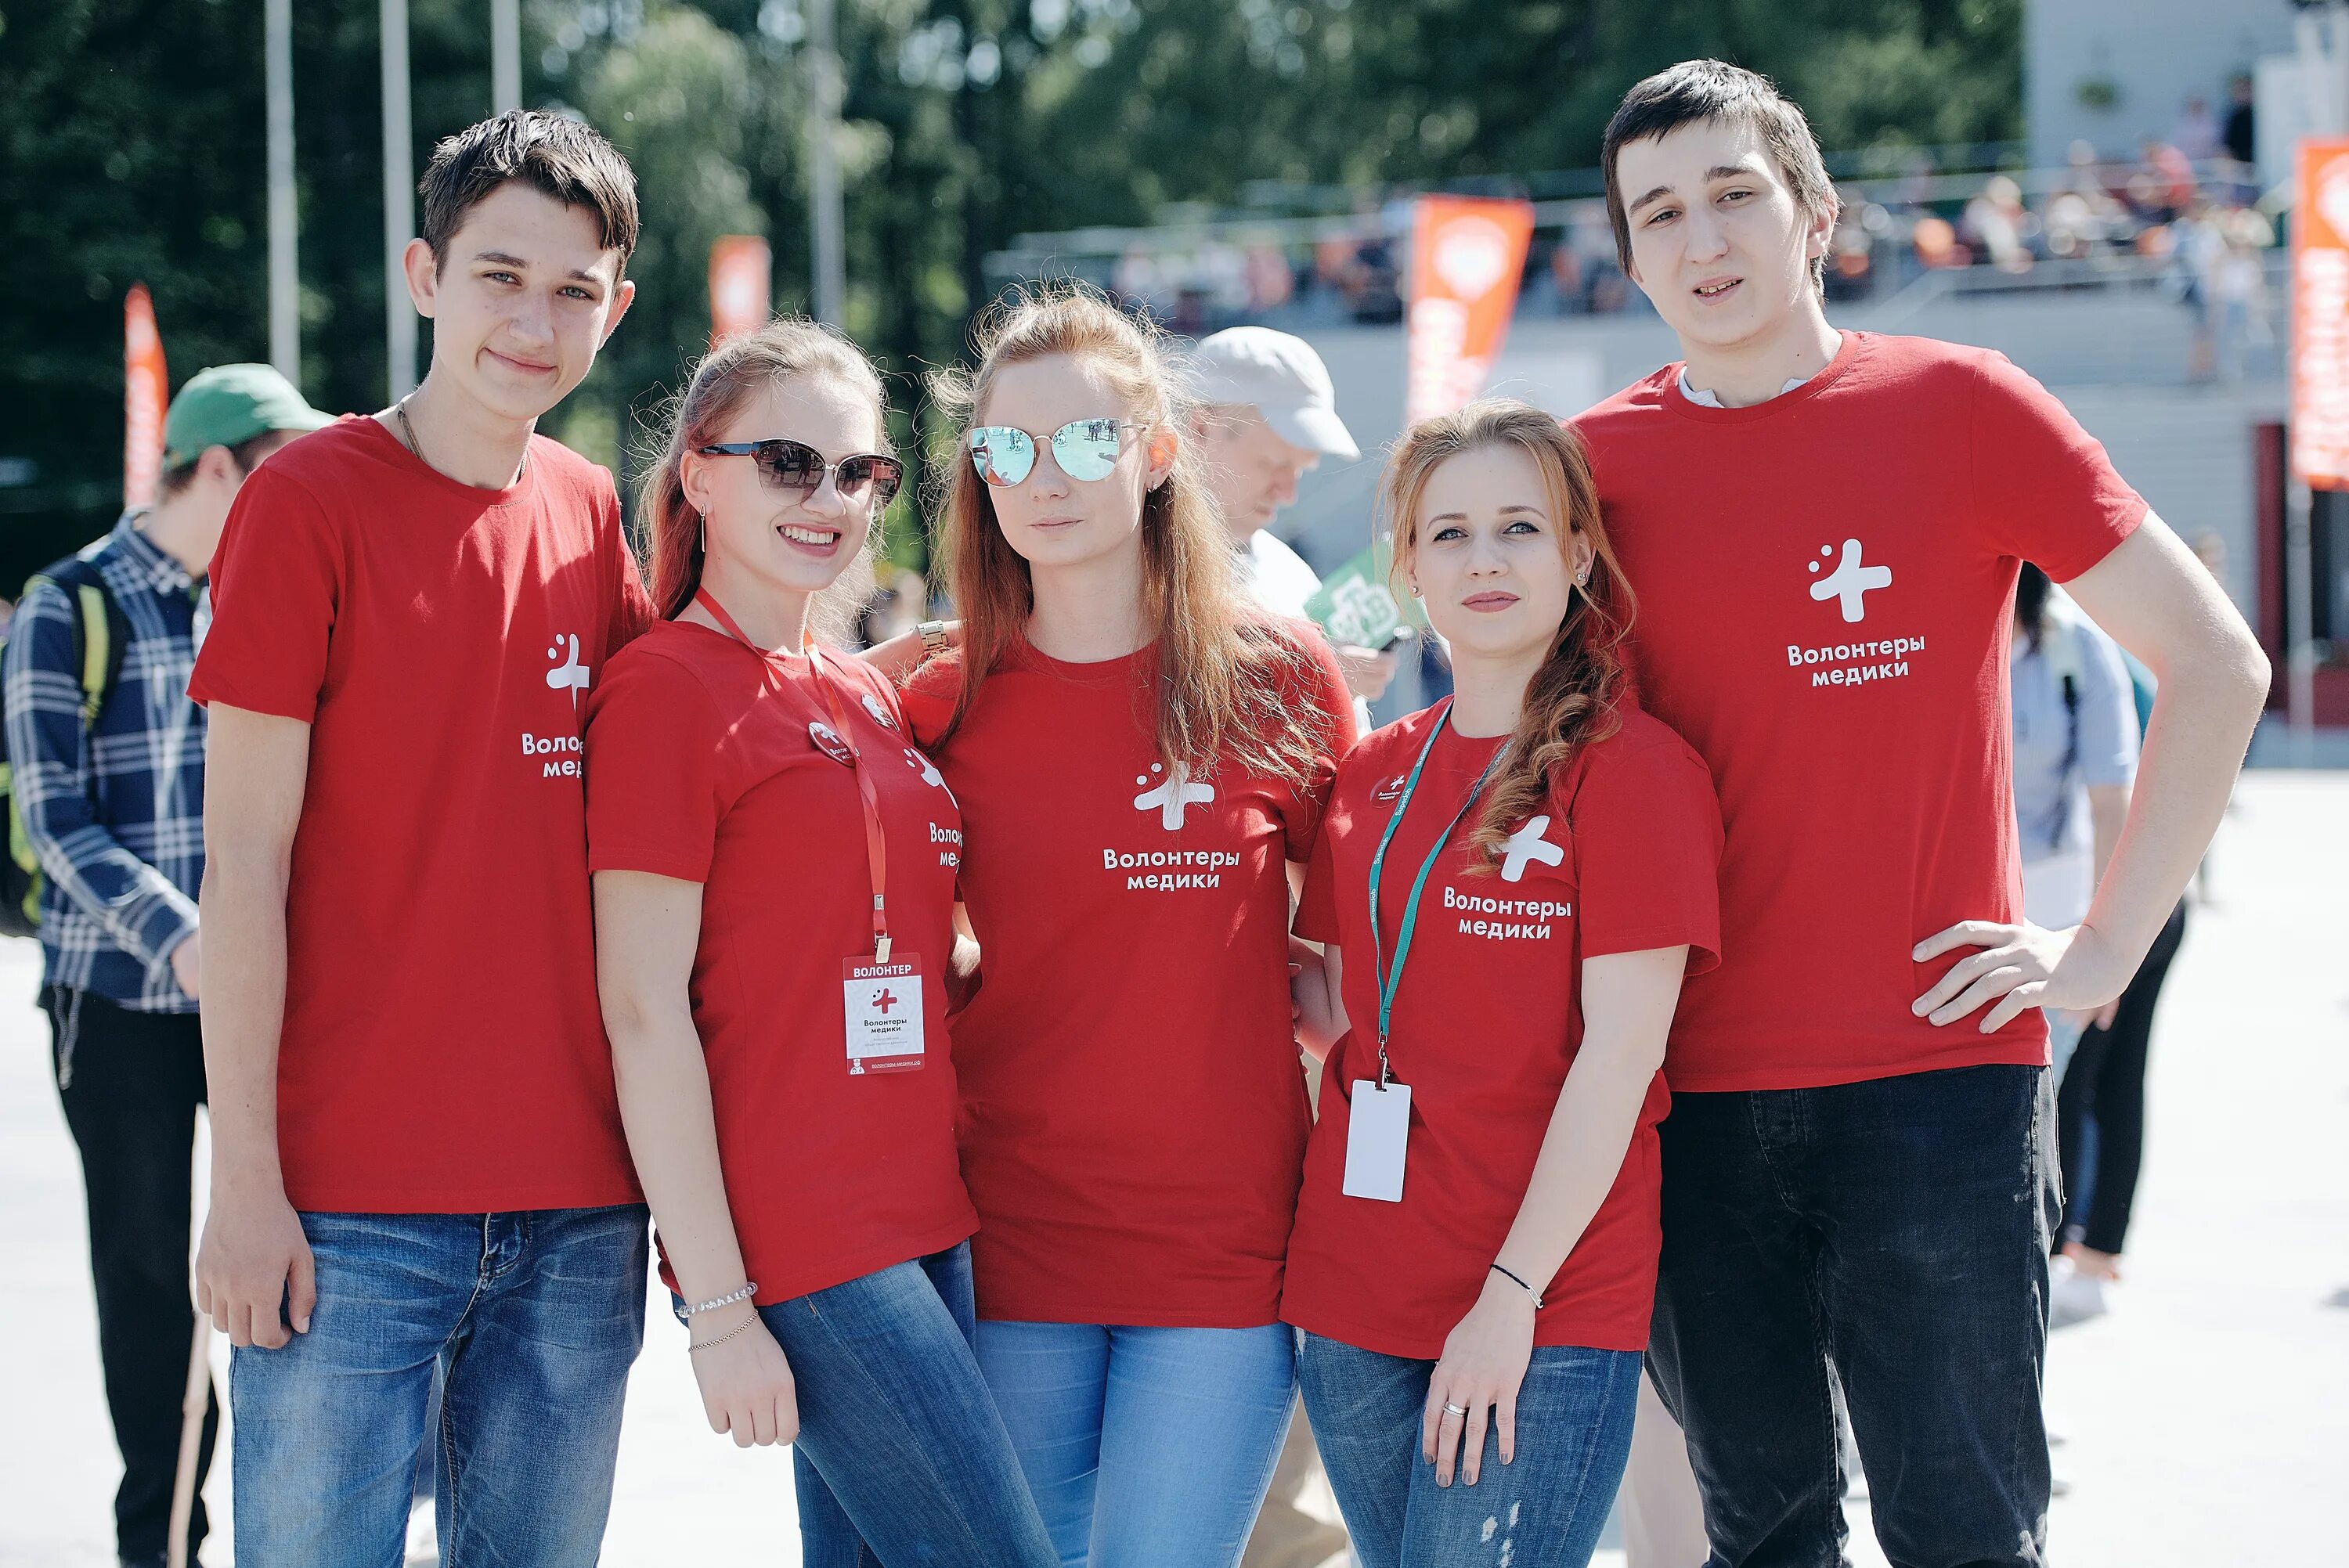 Современные волонтеры. Современное волонтерство. Волонтерство в современном мире. Молодежь и волонтерство. Российские волонтерские организации